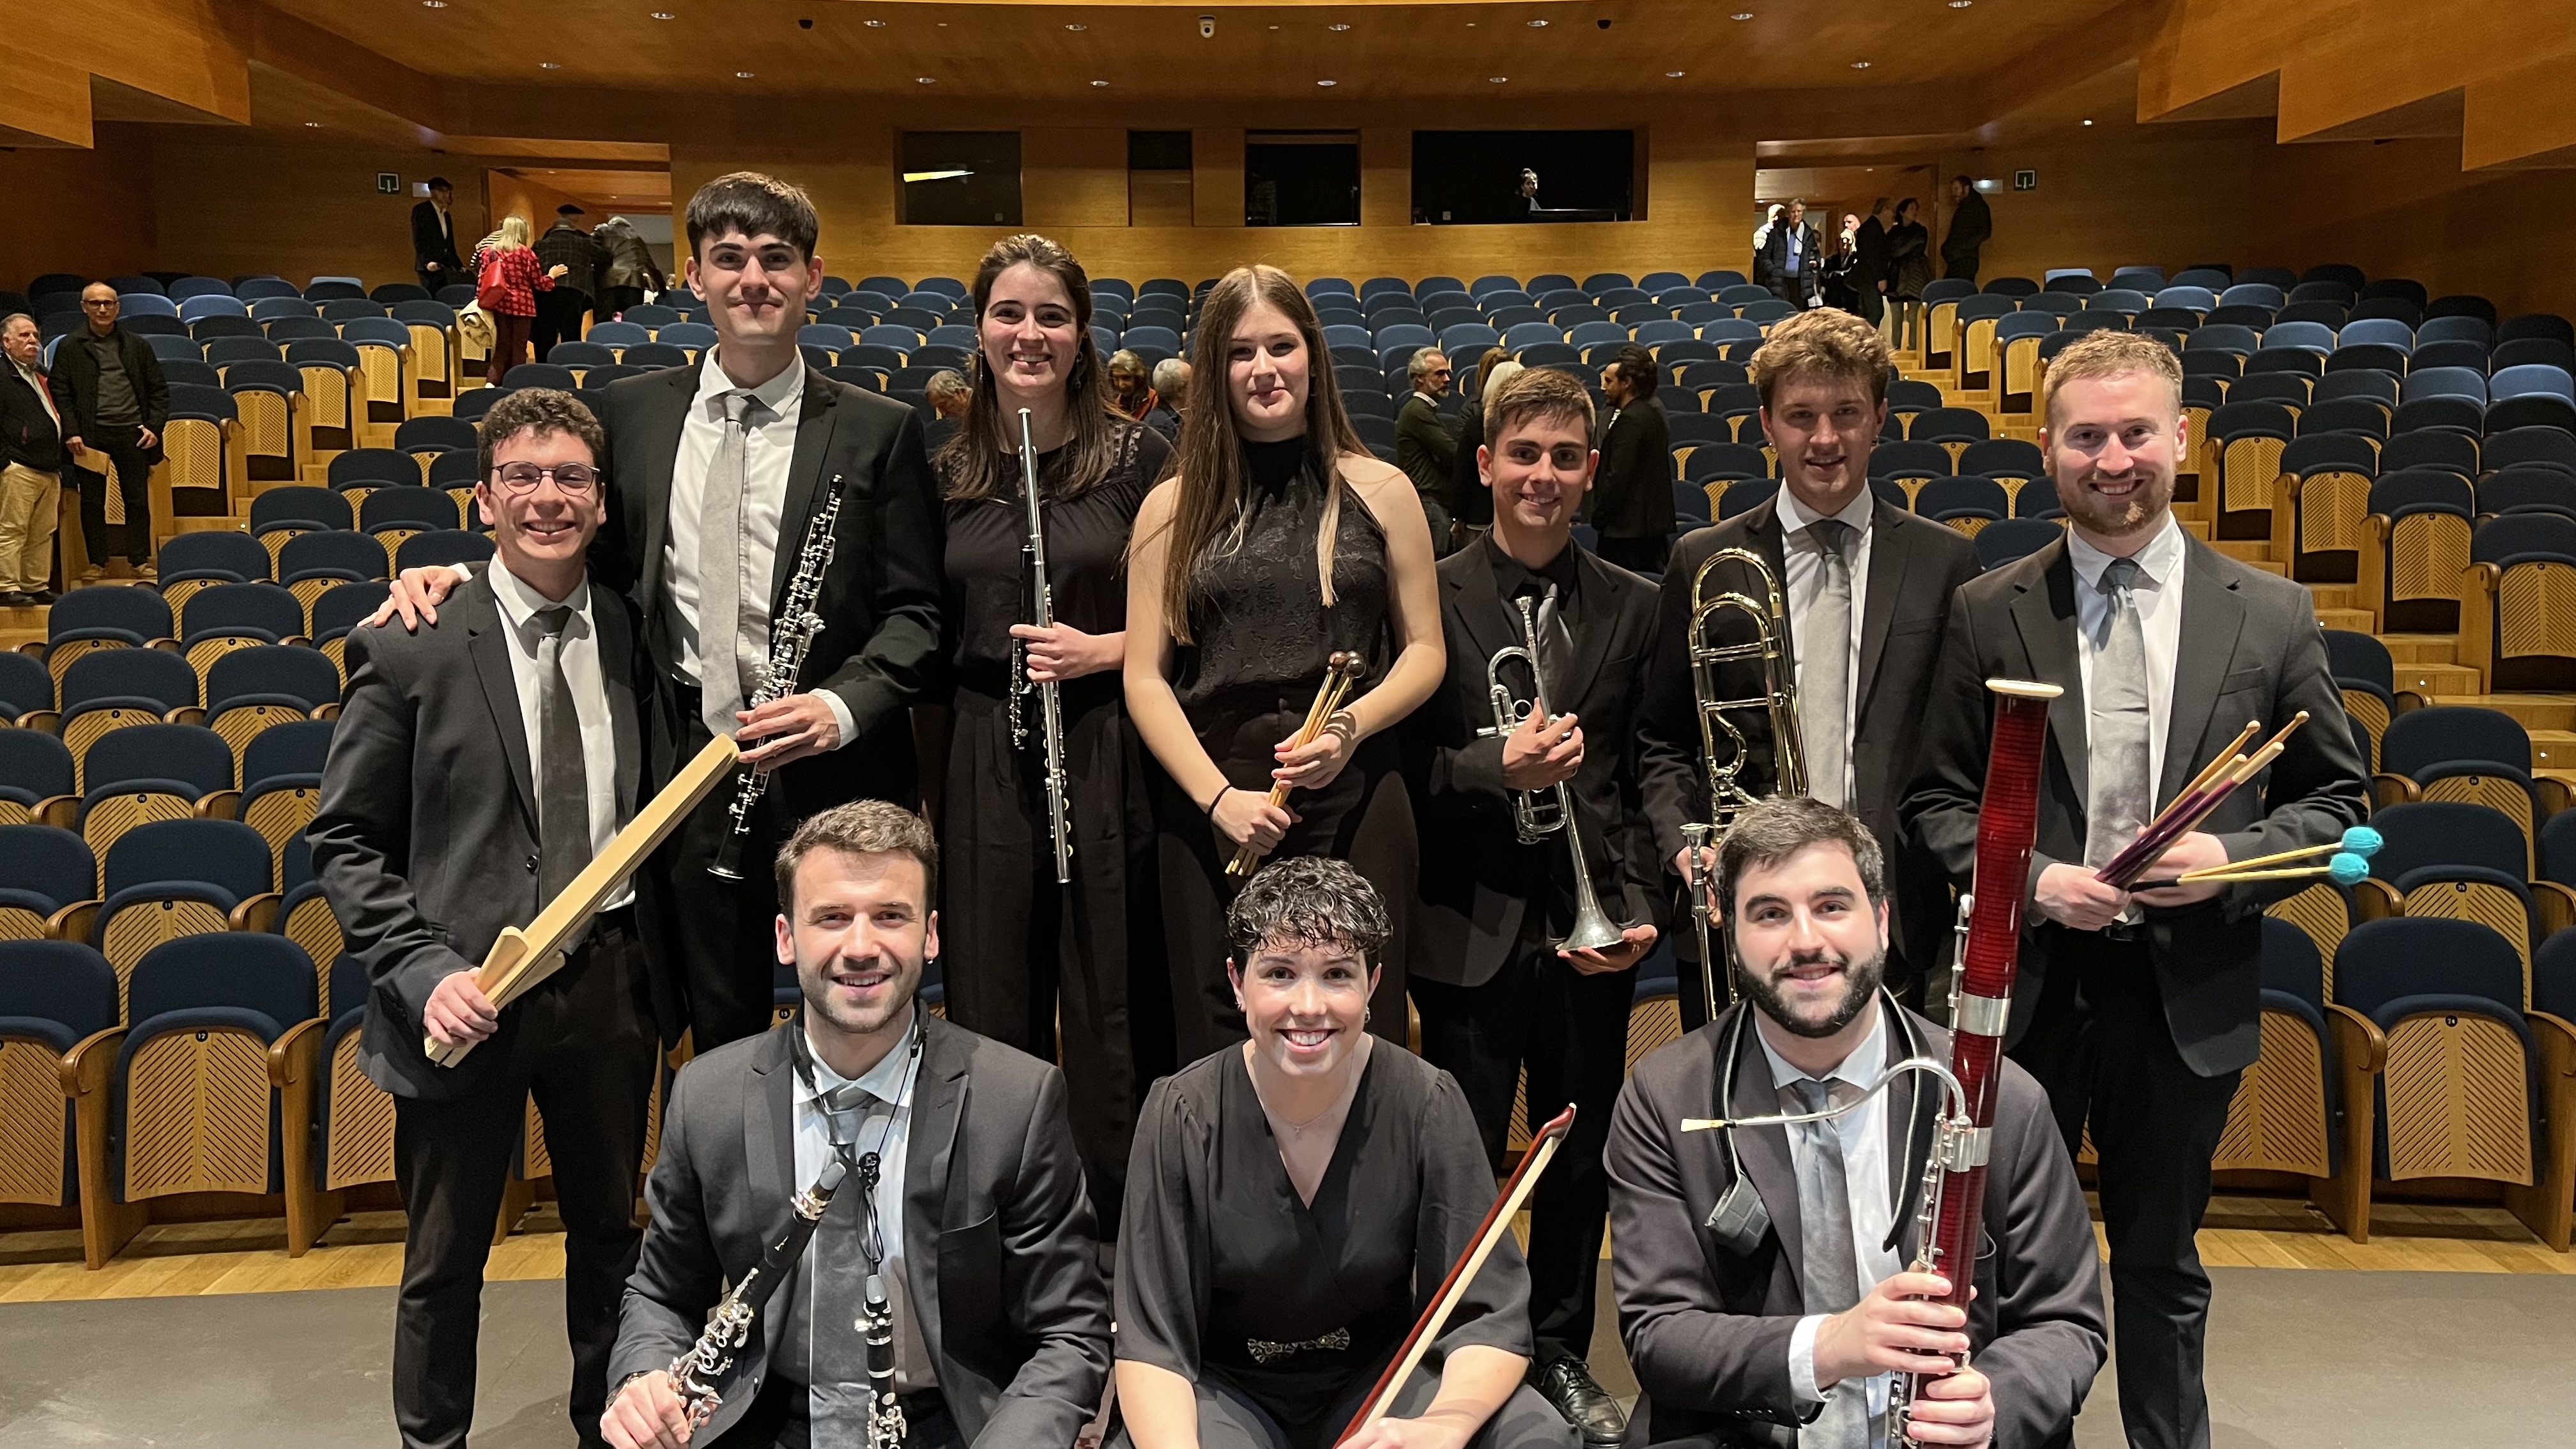 Alumnado del Conservatorio Superior de Música de Navarra actúa junto con la Orquesta Sinfónica de Navarra en el concierto homenaje a González Acilu